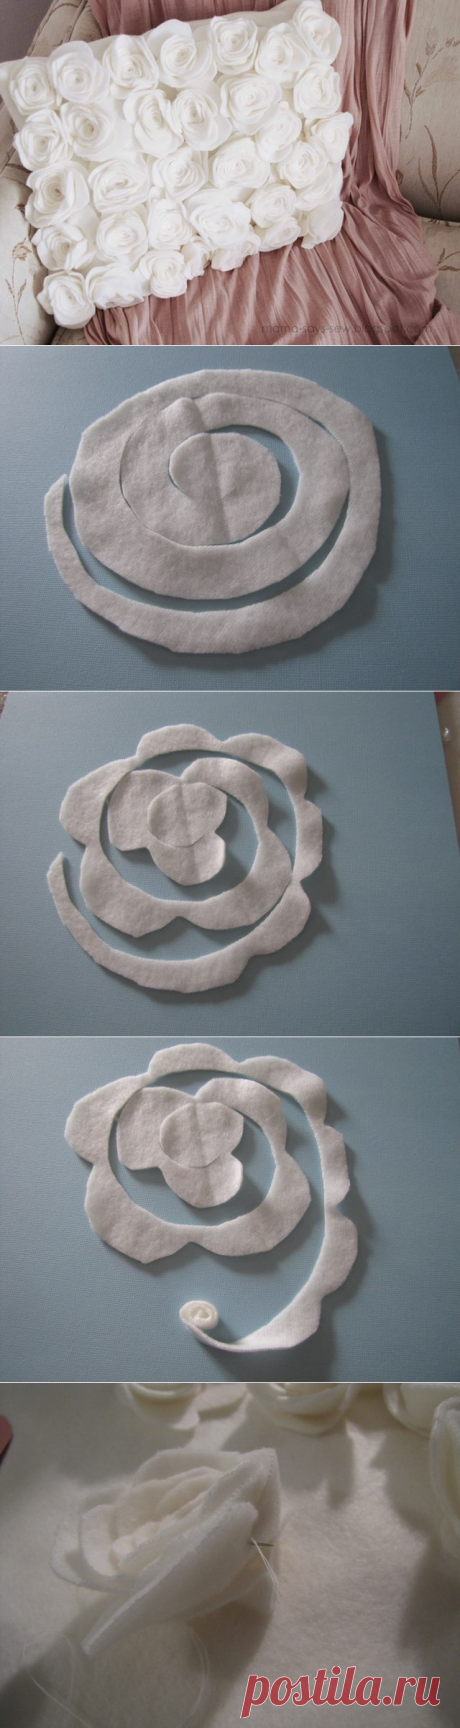 Превращение простой подушки при помощи флиса в шедевр — Сделай сам, идеи для творчества - DIY Ideas